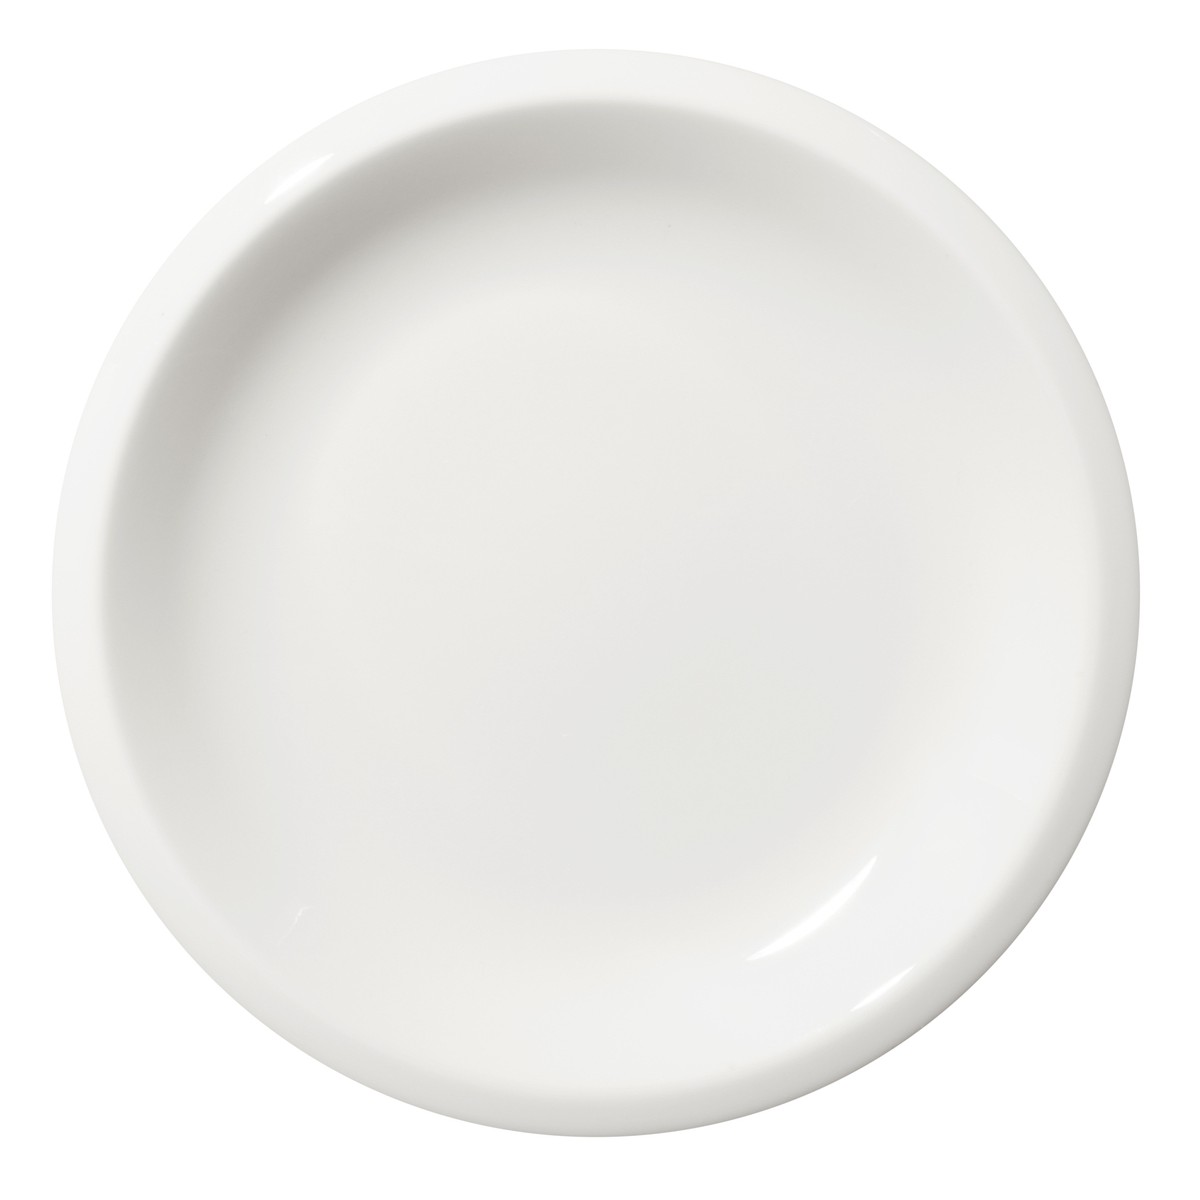 Plate Raami – white porcelain – Ø17 cm